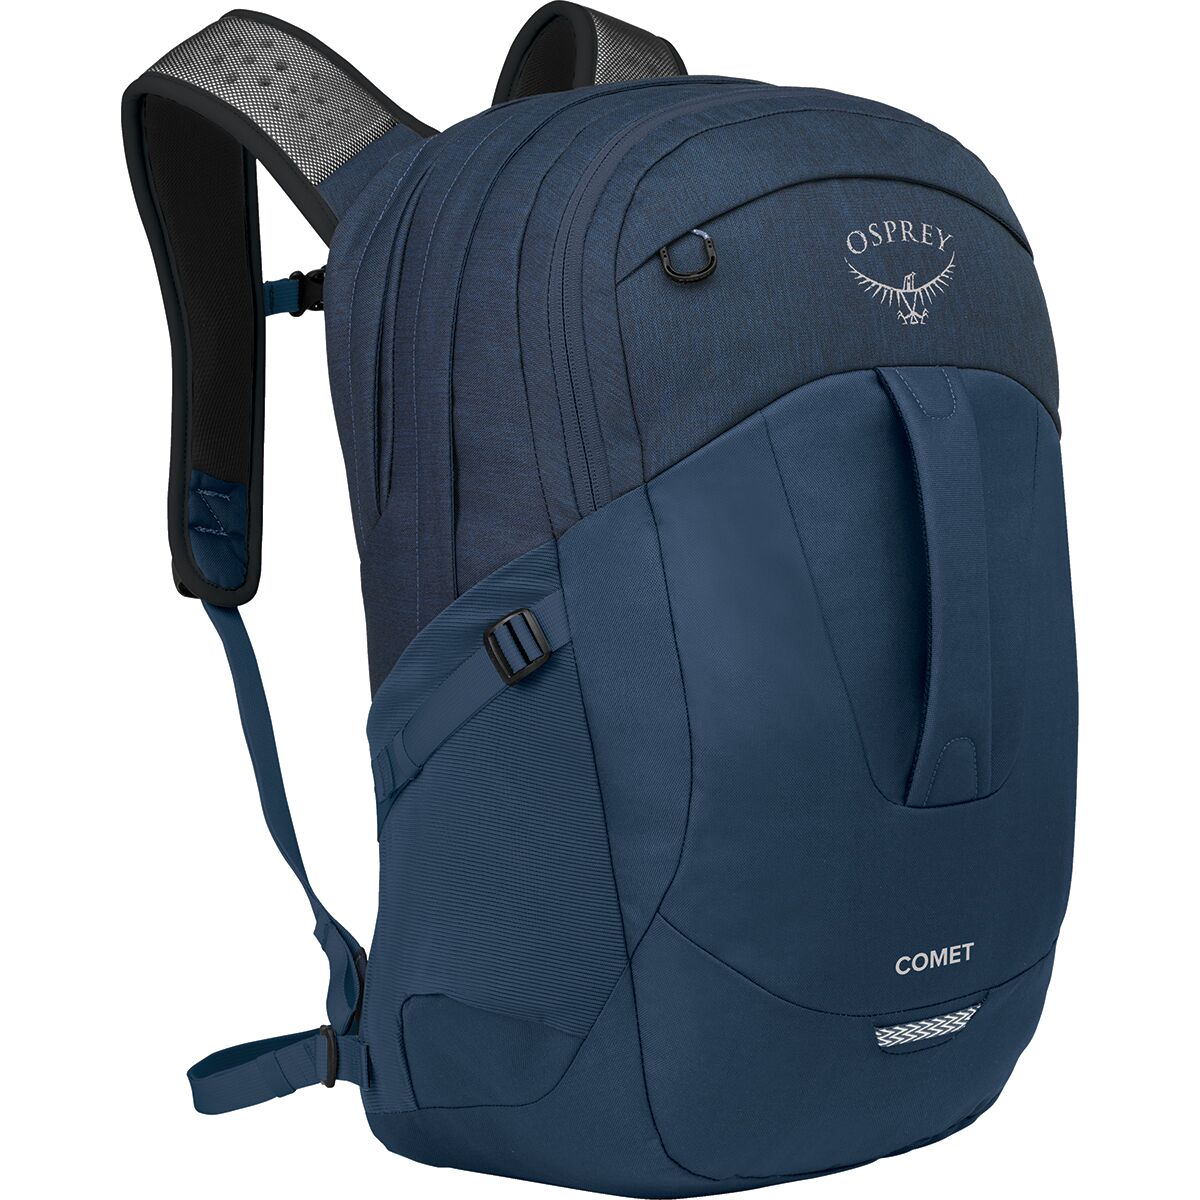 Comet 30L Backpack